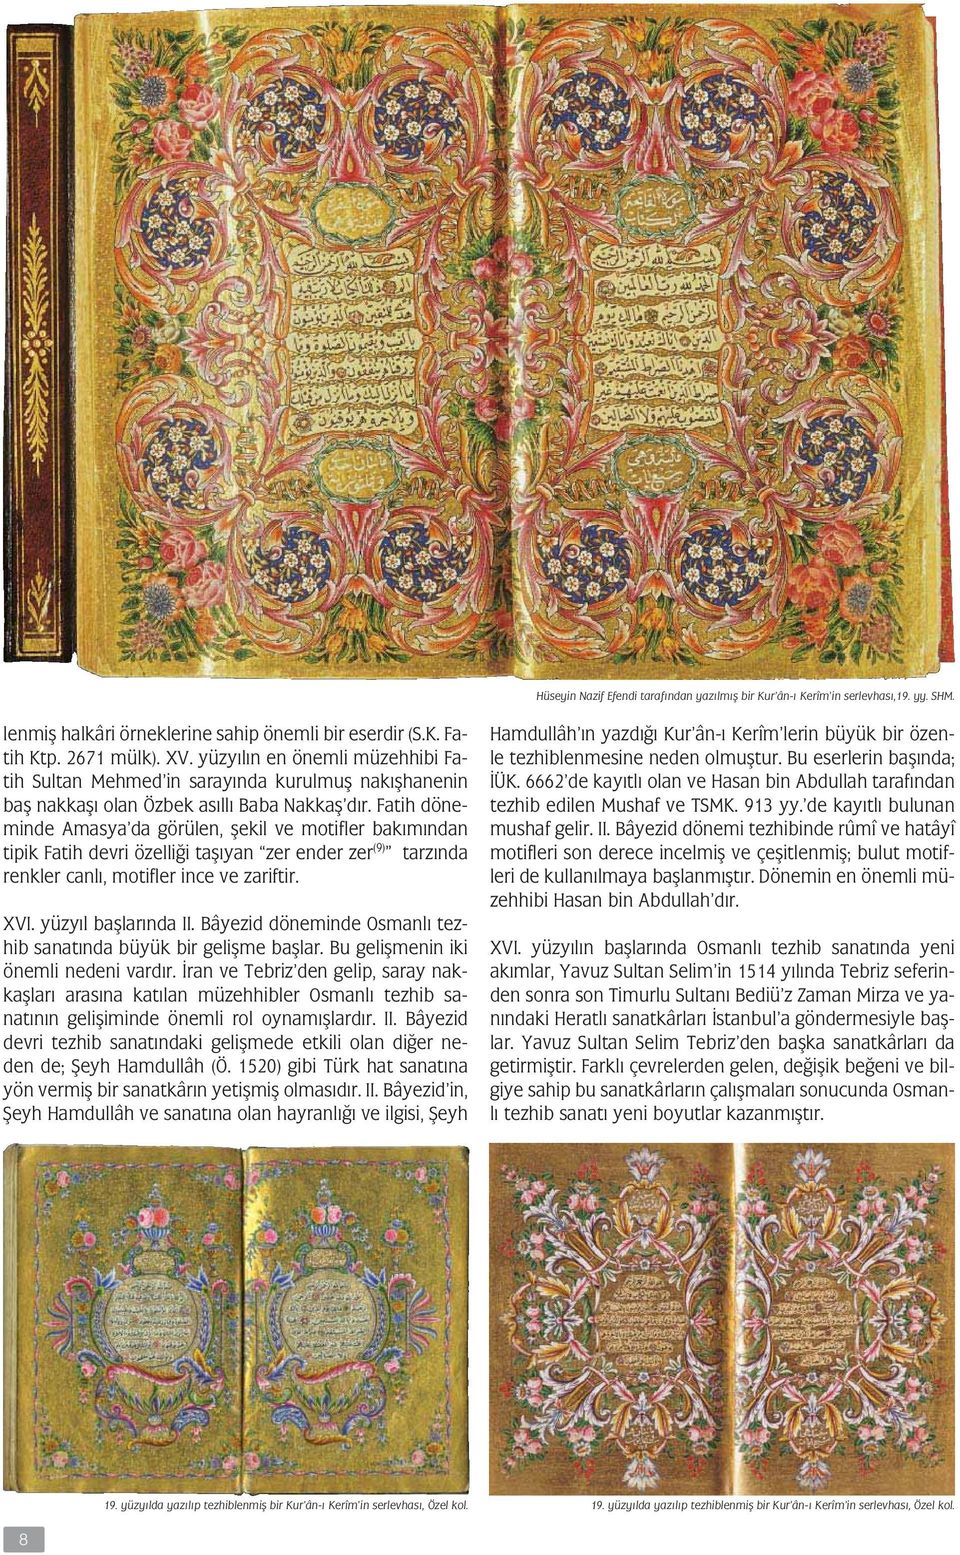 Fatih döneminde Amasya da görülen, ekil ve motifler bakımından tipik Fatih devri özelli i ta ıyan zer ender zer (9) tarzında renkler canlı, motifler ince ve zariftir. XVI. yüzyıl ba larında II.